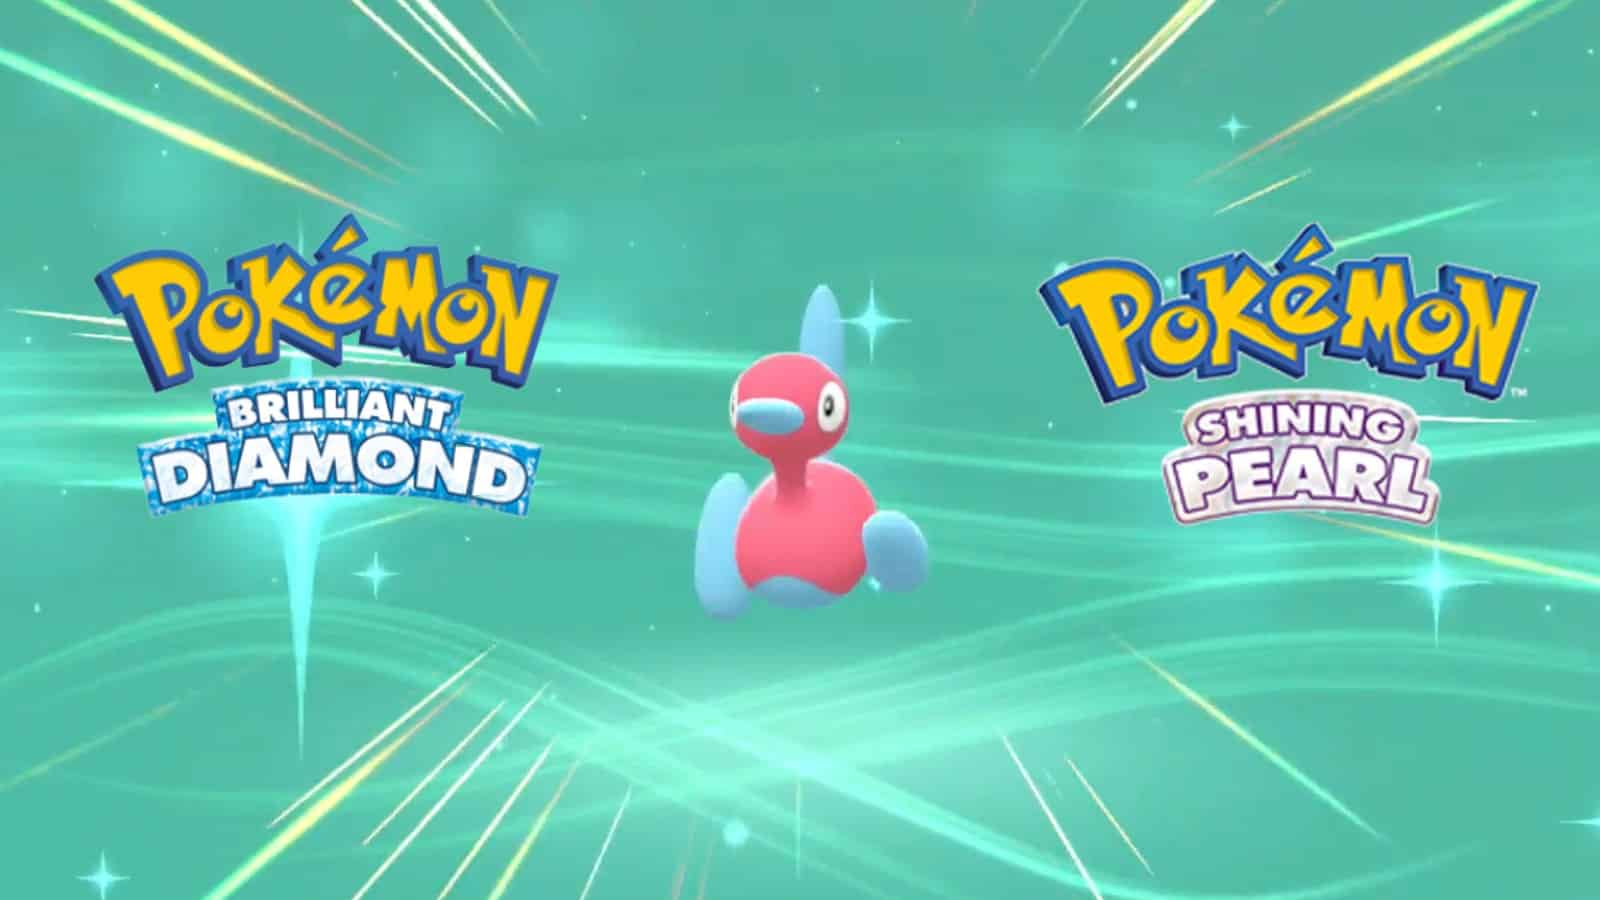 Porygon's evolution screen in Pokemon Brilliant Diamond and Shining Pearl